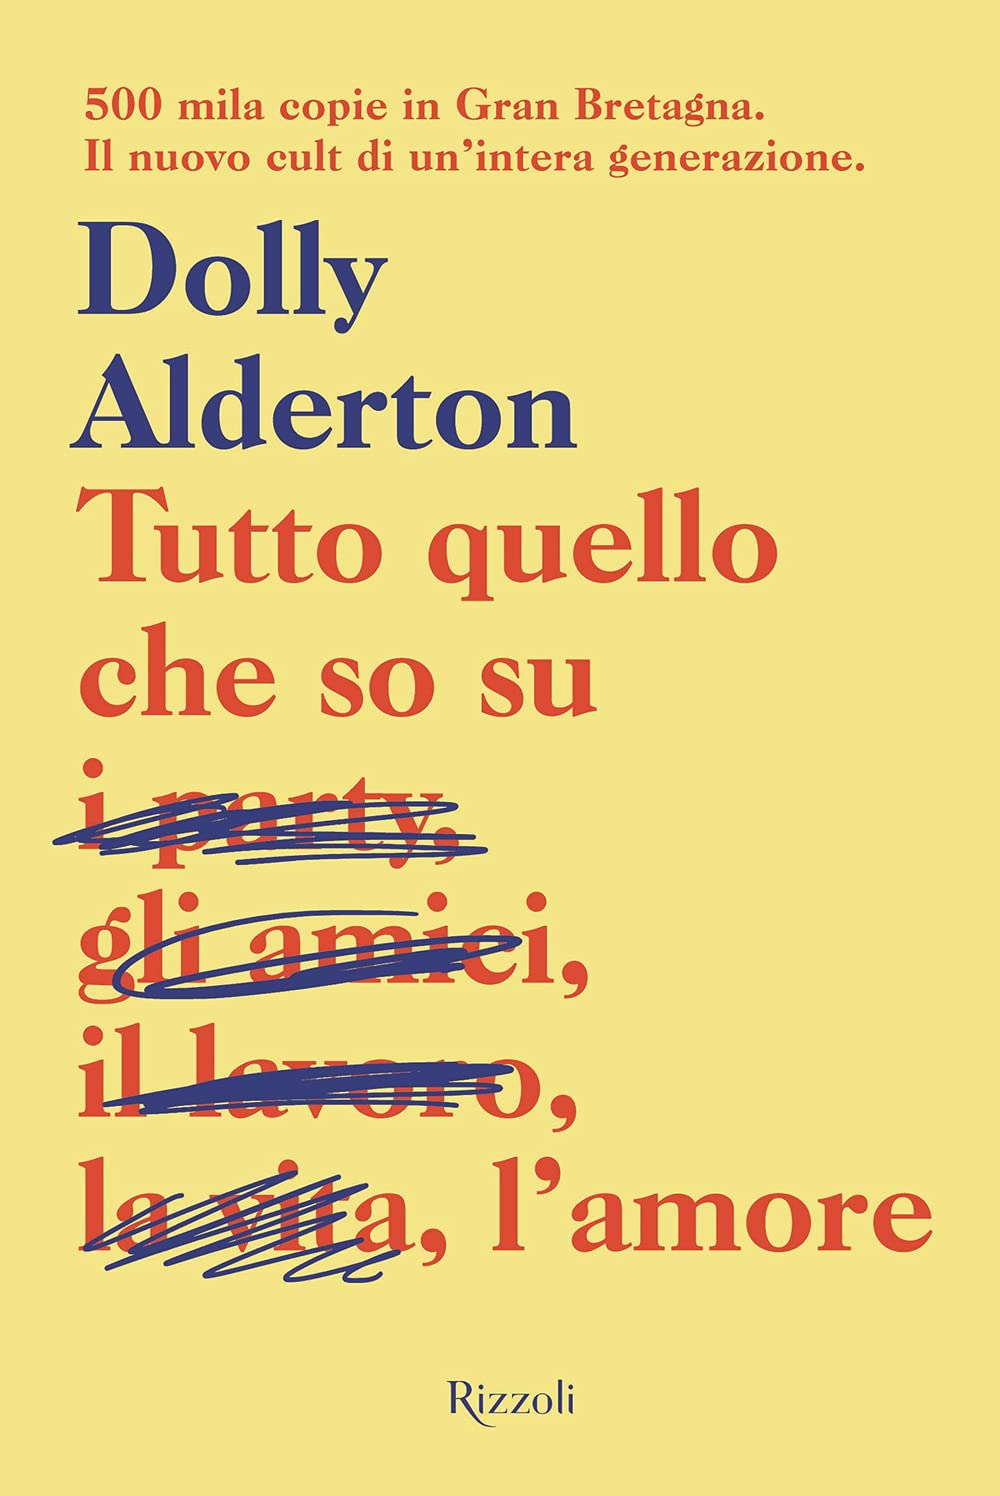 Copertina libro "Tutto quello che so sull'amore" di Dolly Alderton, Rizzoli, 2018